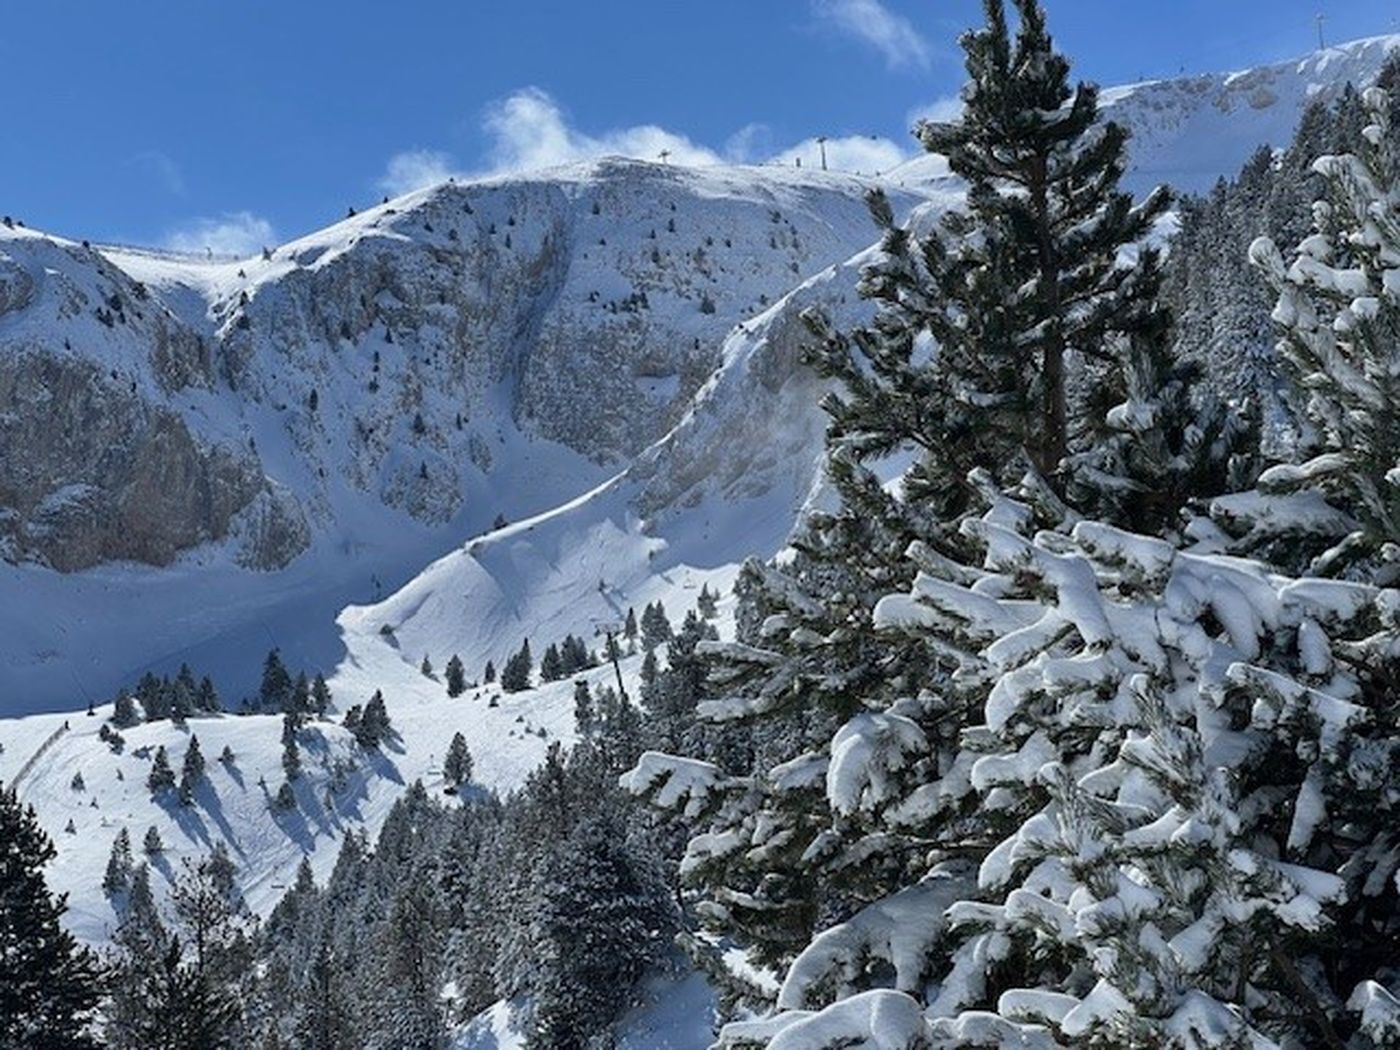 Masella cierra una temporada de esquí irregular pero satisfactoria